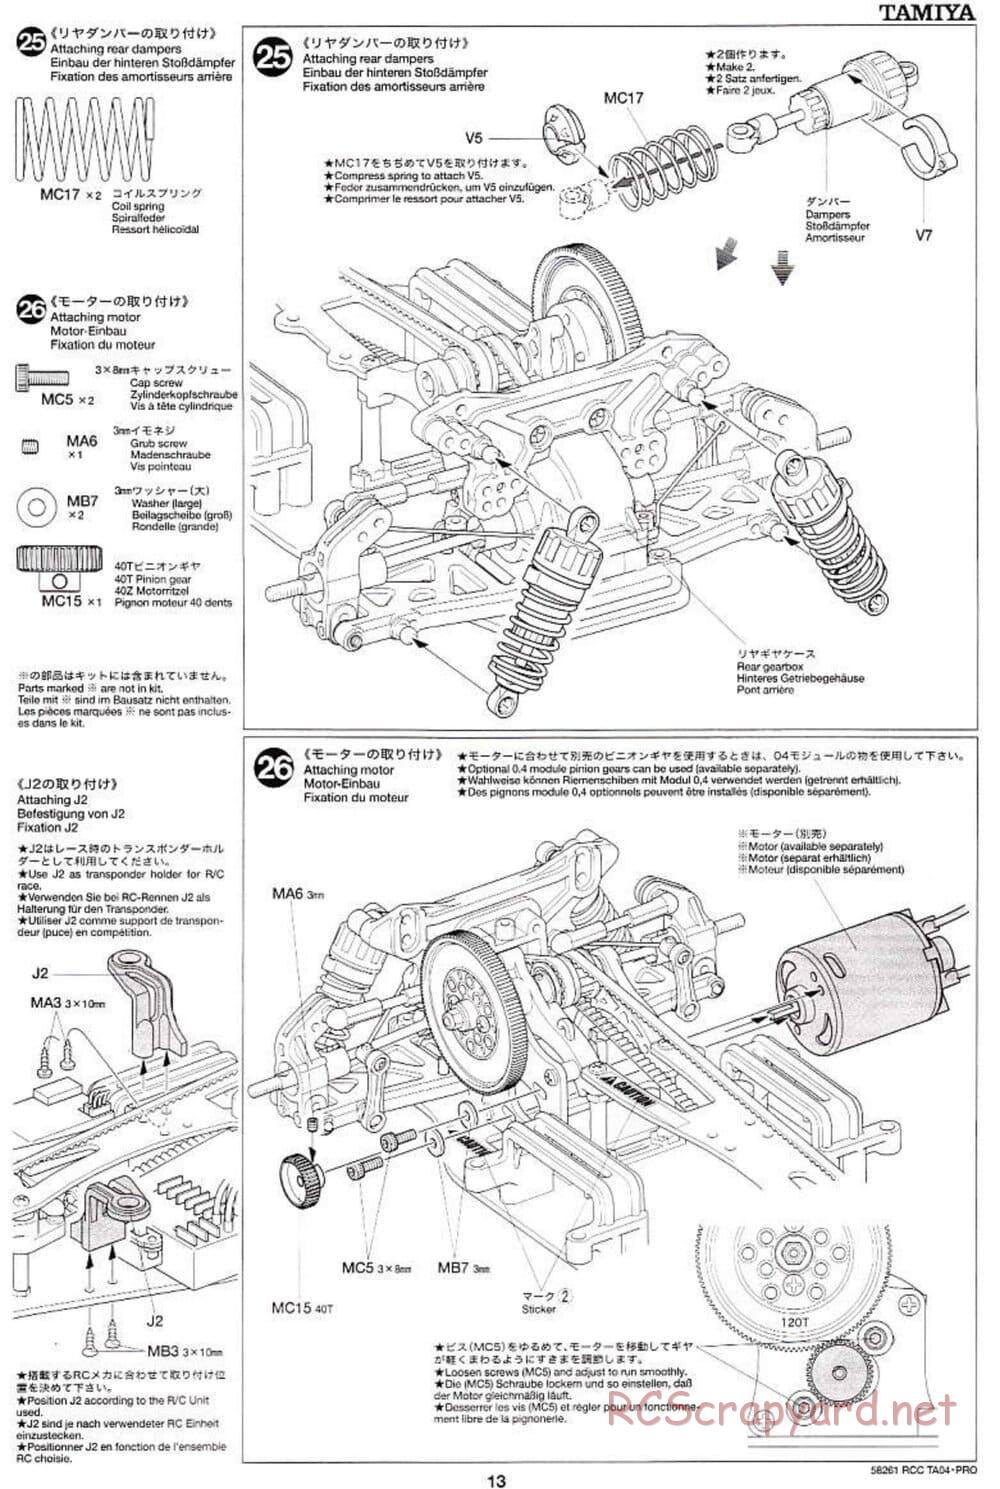 Tamiya - TA-04 Pro Chassis - Manual - Page 13